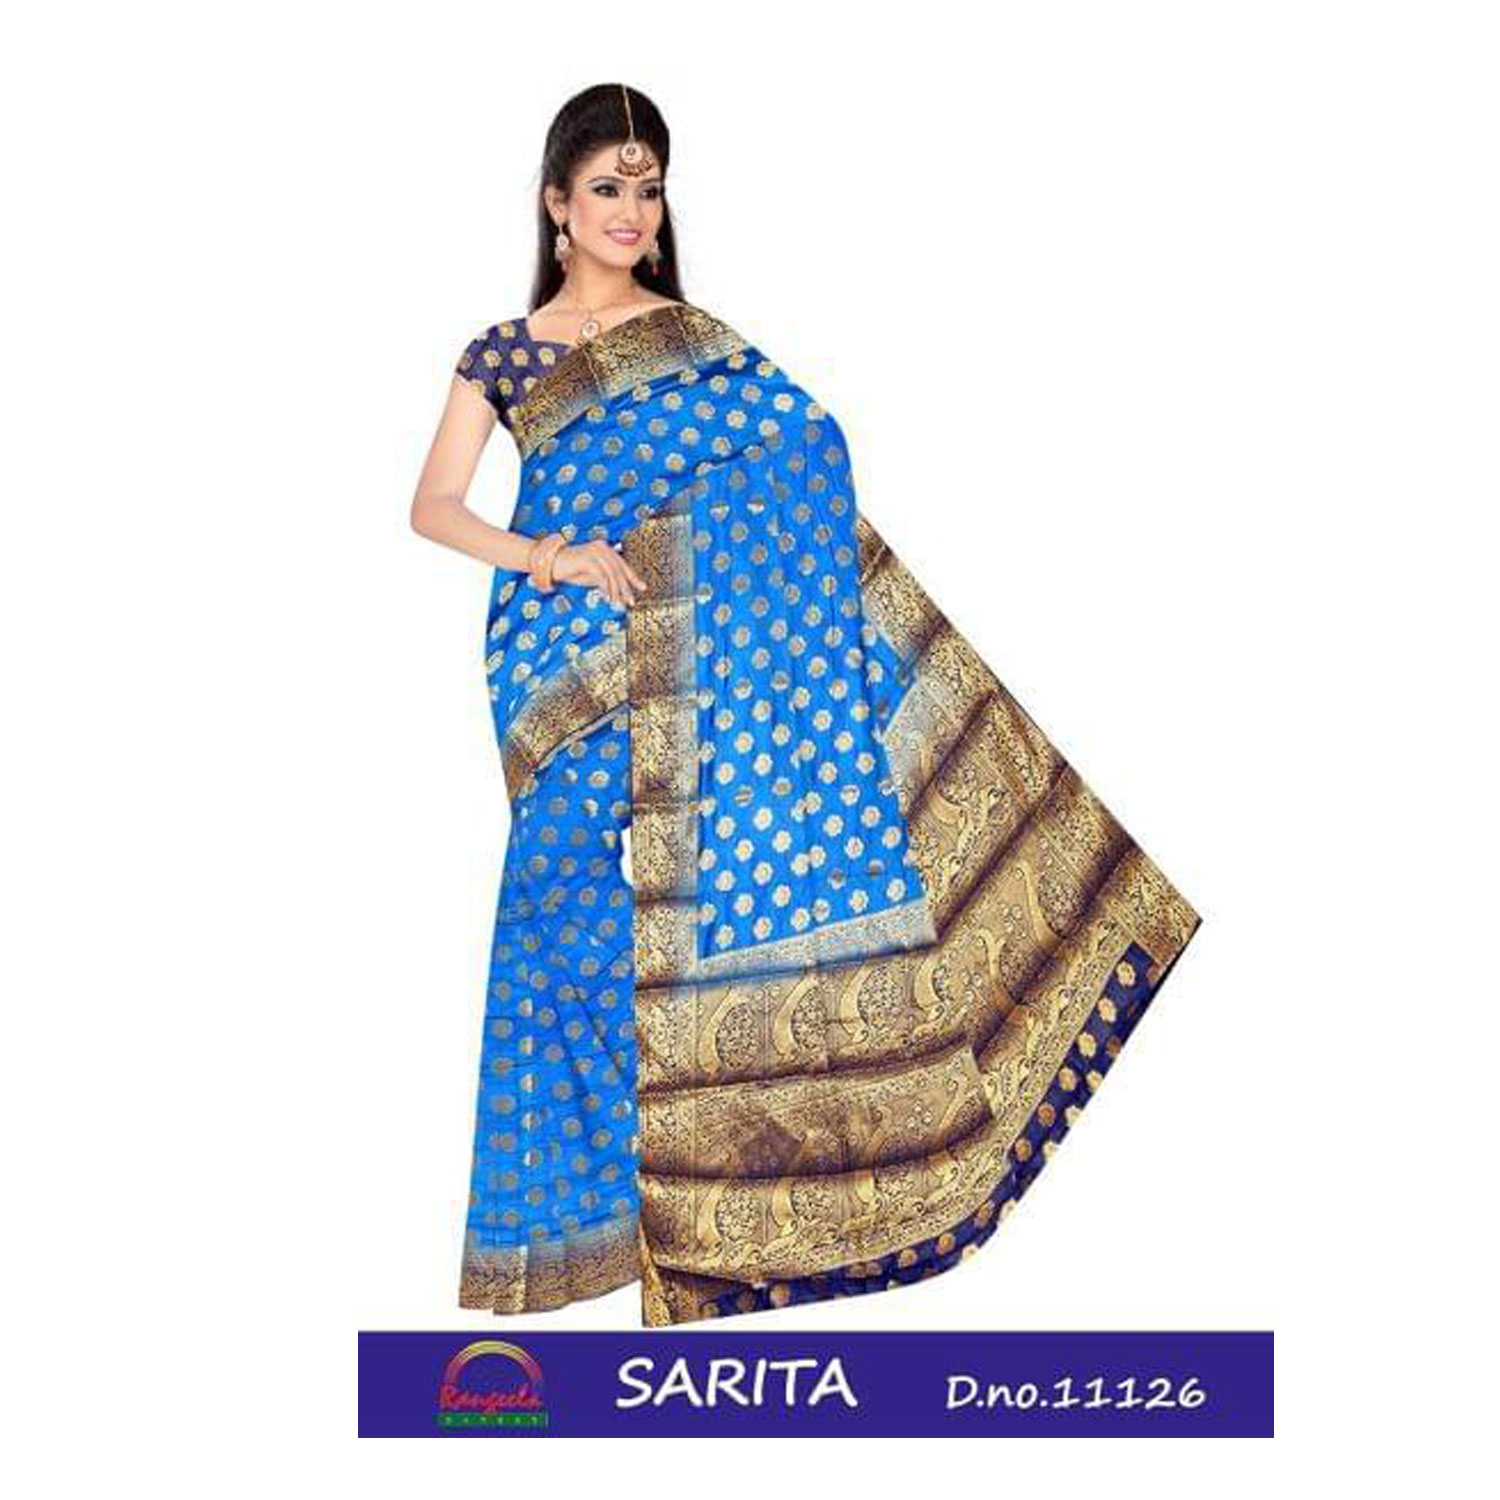 RANGEELA Women's Banglore Silk Sarita Saree |D.No - W-6297 | Pack of 8